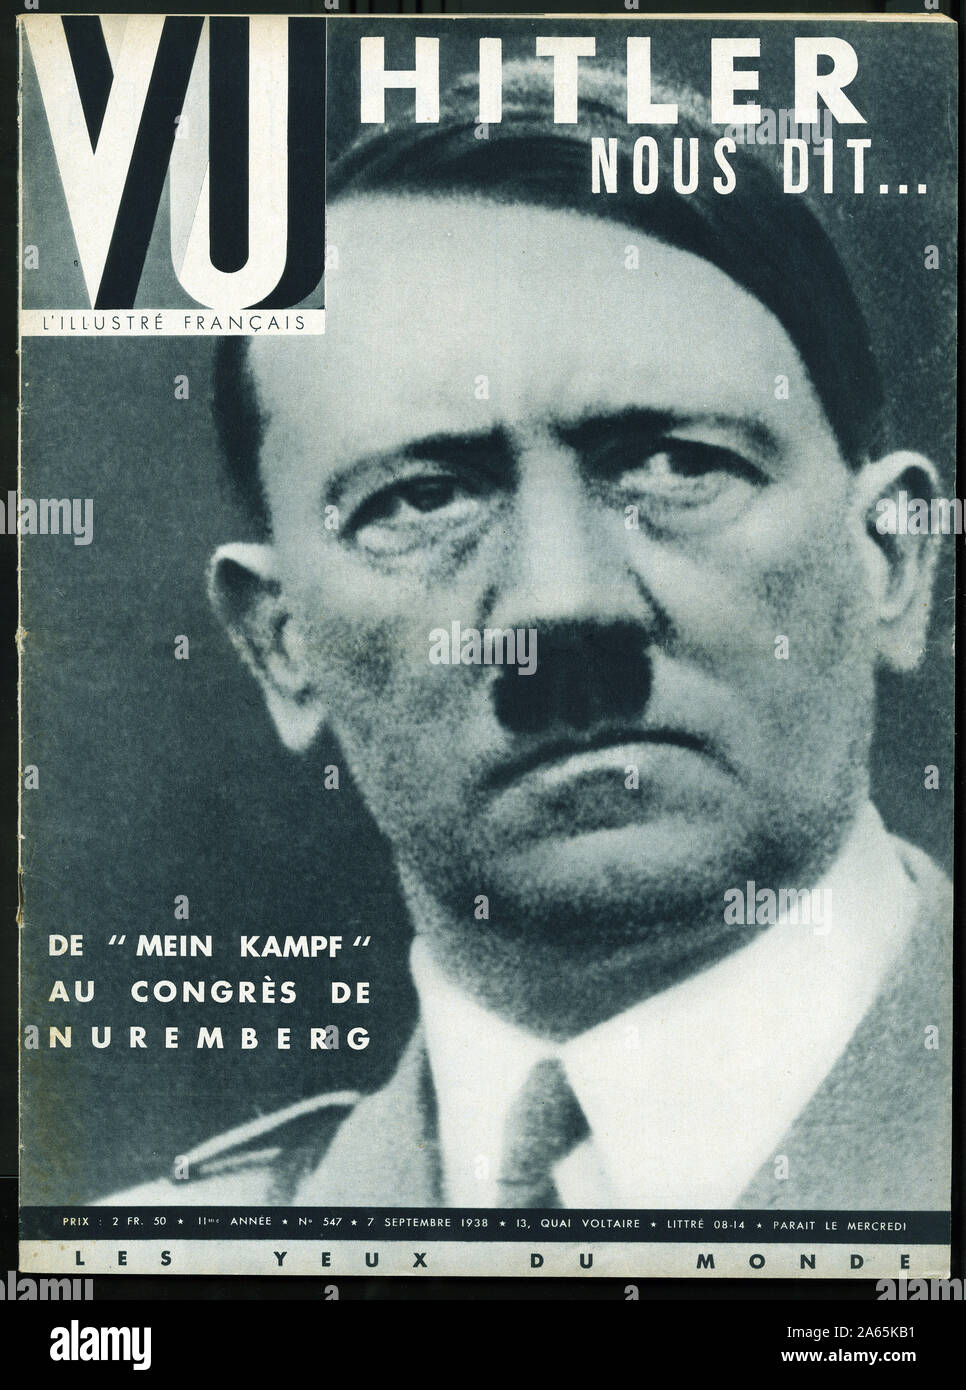 Portrait d'Adolf Hitler (1889-1945), chancelier allemand, fondateur du nazisme et de la dictature instaurateur totalitaire du Troisieme Reich. Hg Stockfoto